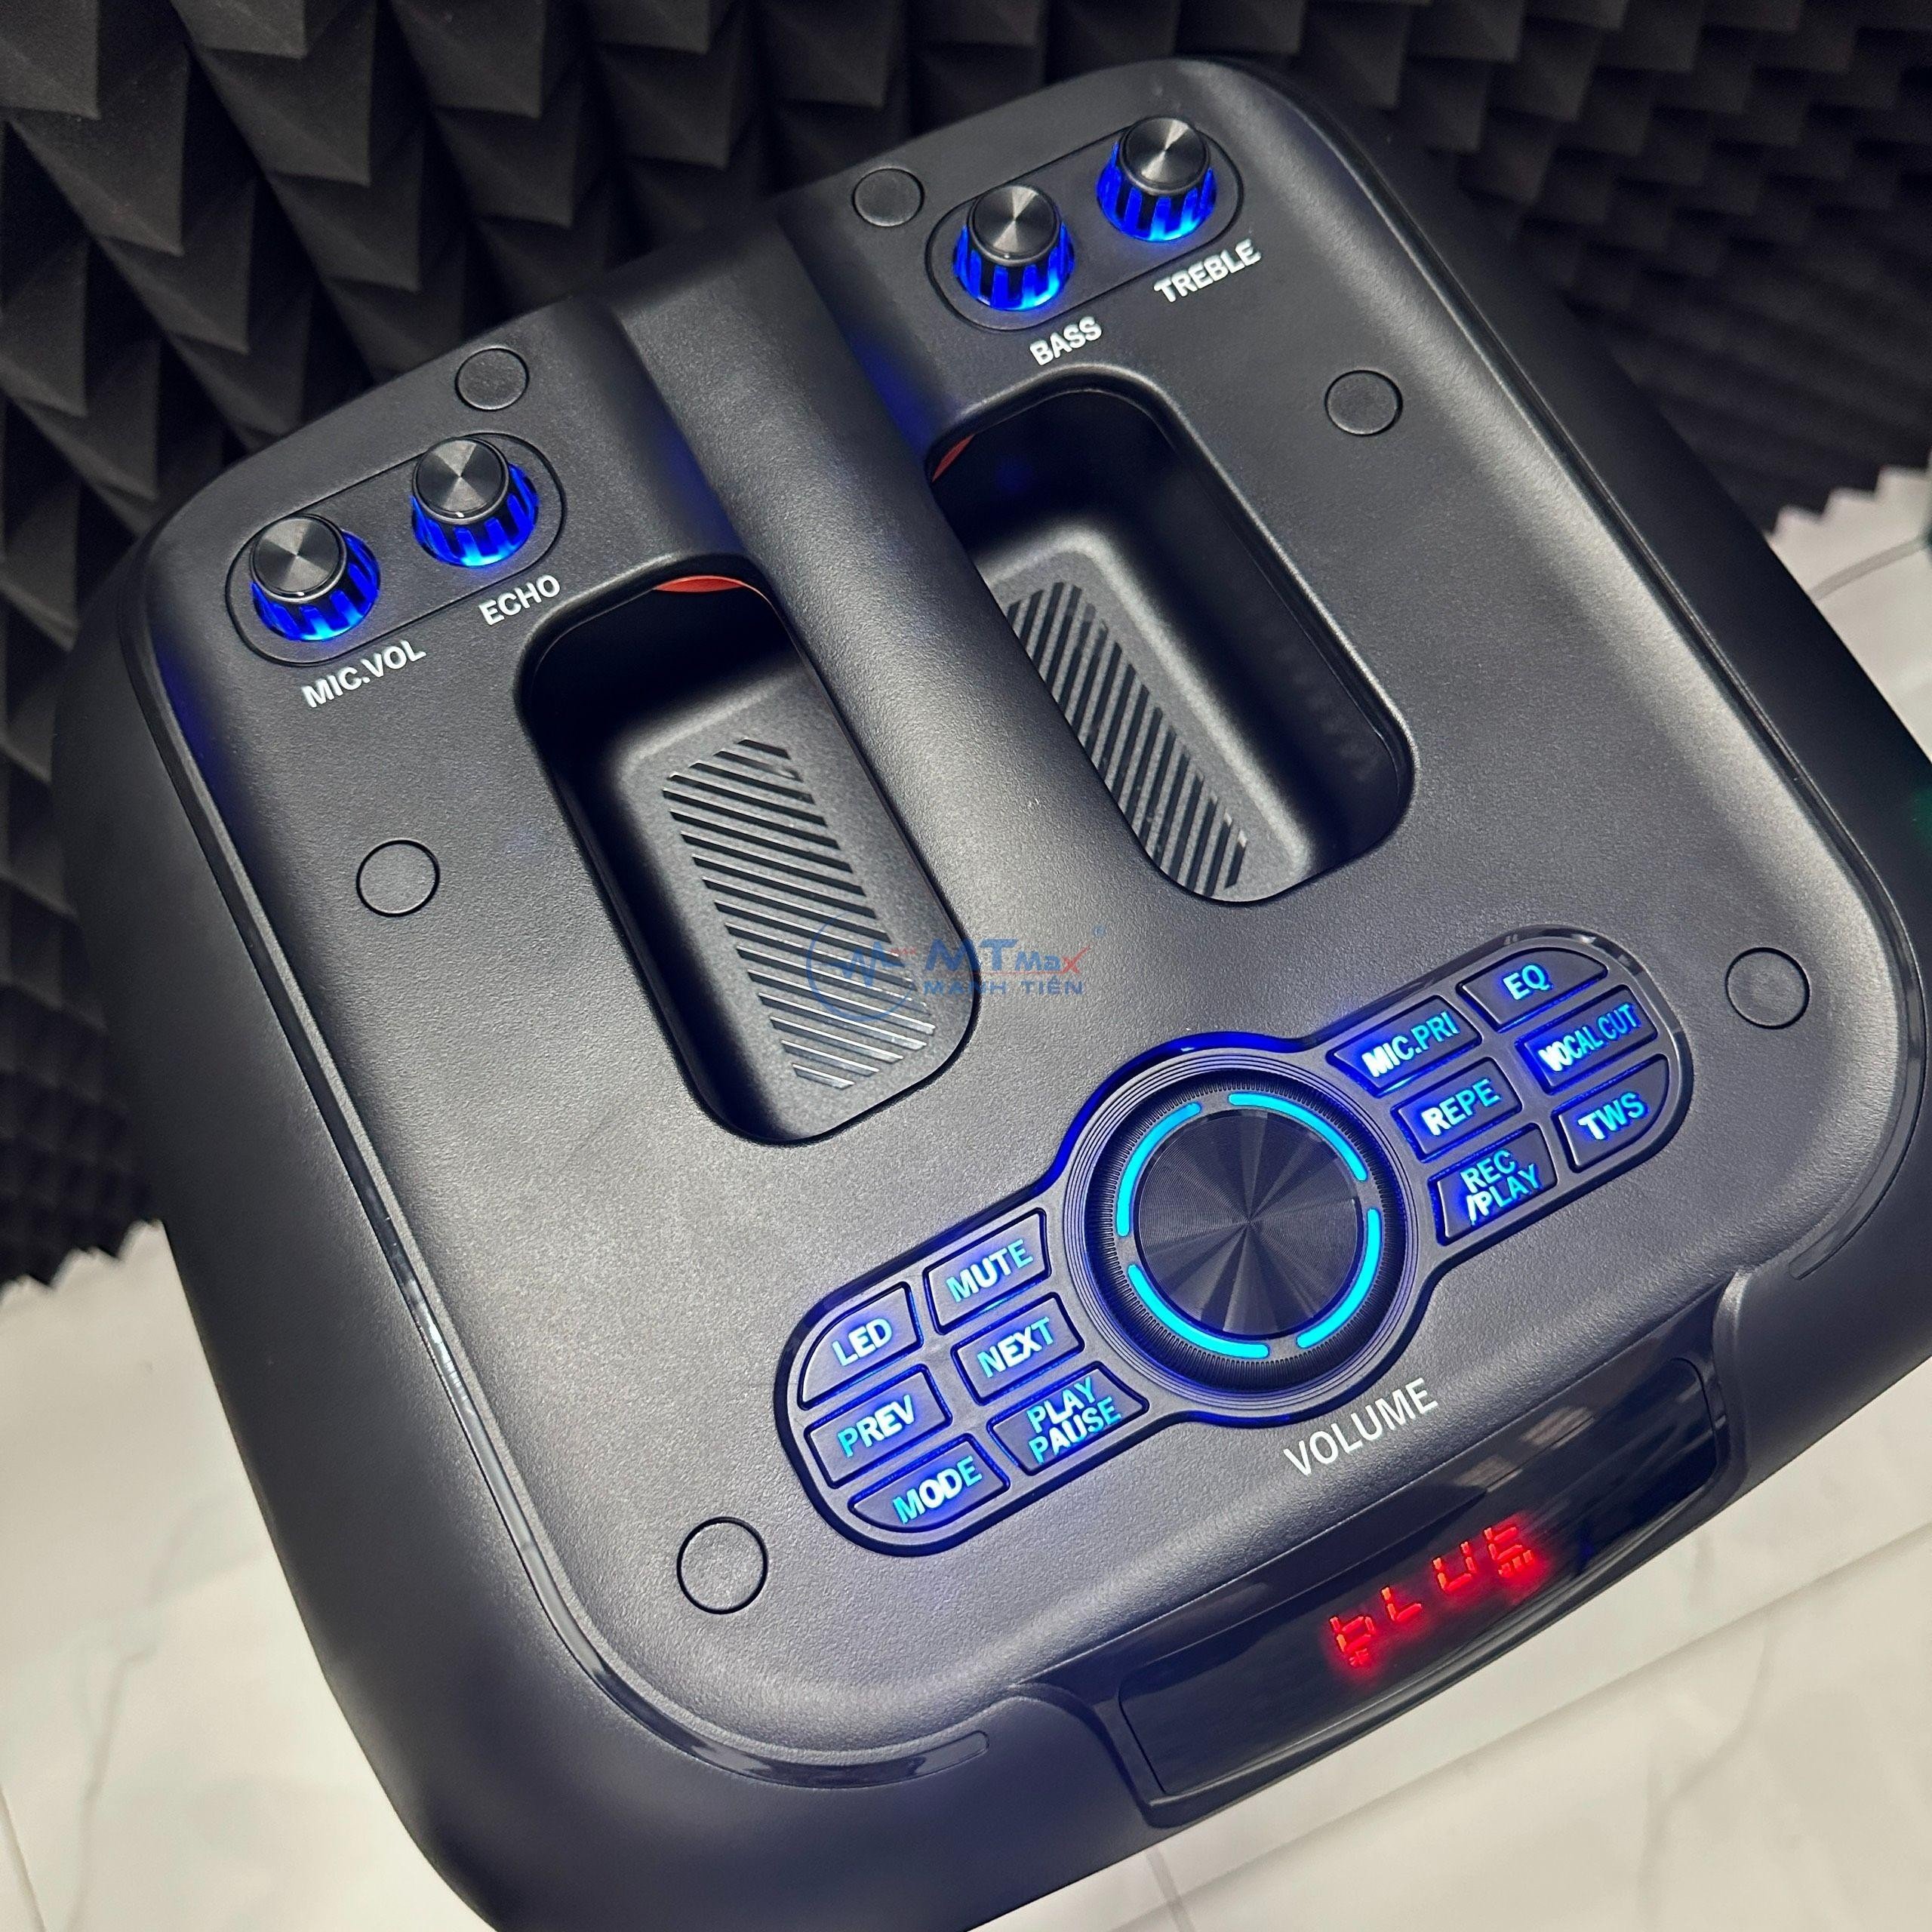 Loa Bluetooh Karaoke NDR 102B - Loa Đèn Led Cực Đẹp 7 Chế Độ, Âm Thanh Mạnh Mẽ, Trầm Ấm, Kết Nối Bluetooth, USB, TF, AUX, TWS, Đi Kèm Chân Loa Có Led RGB Và Micro Không Dây Đa Năng hàng chính hãng